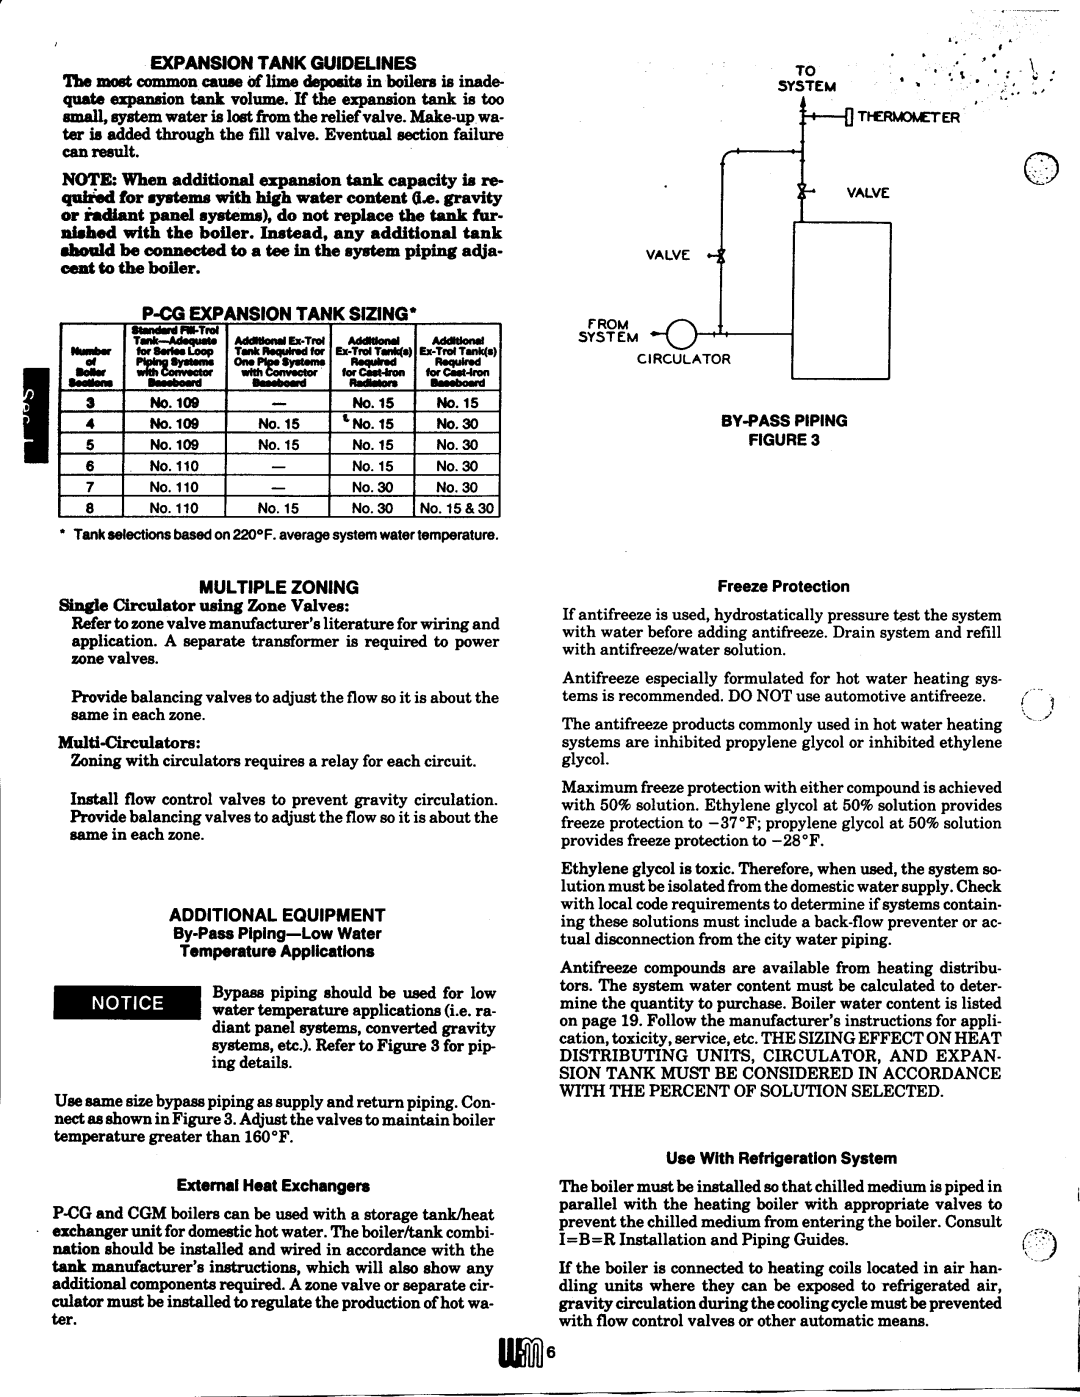 Weil-McLain P-CG, CGM (Series 10) manual 